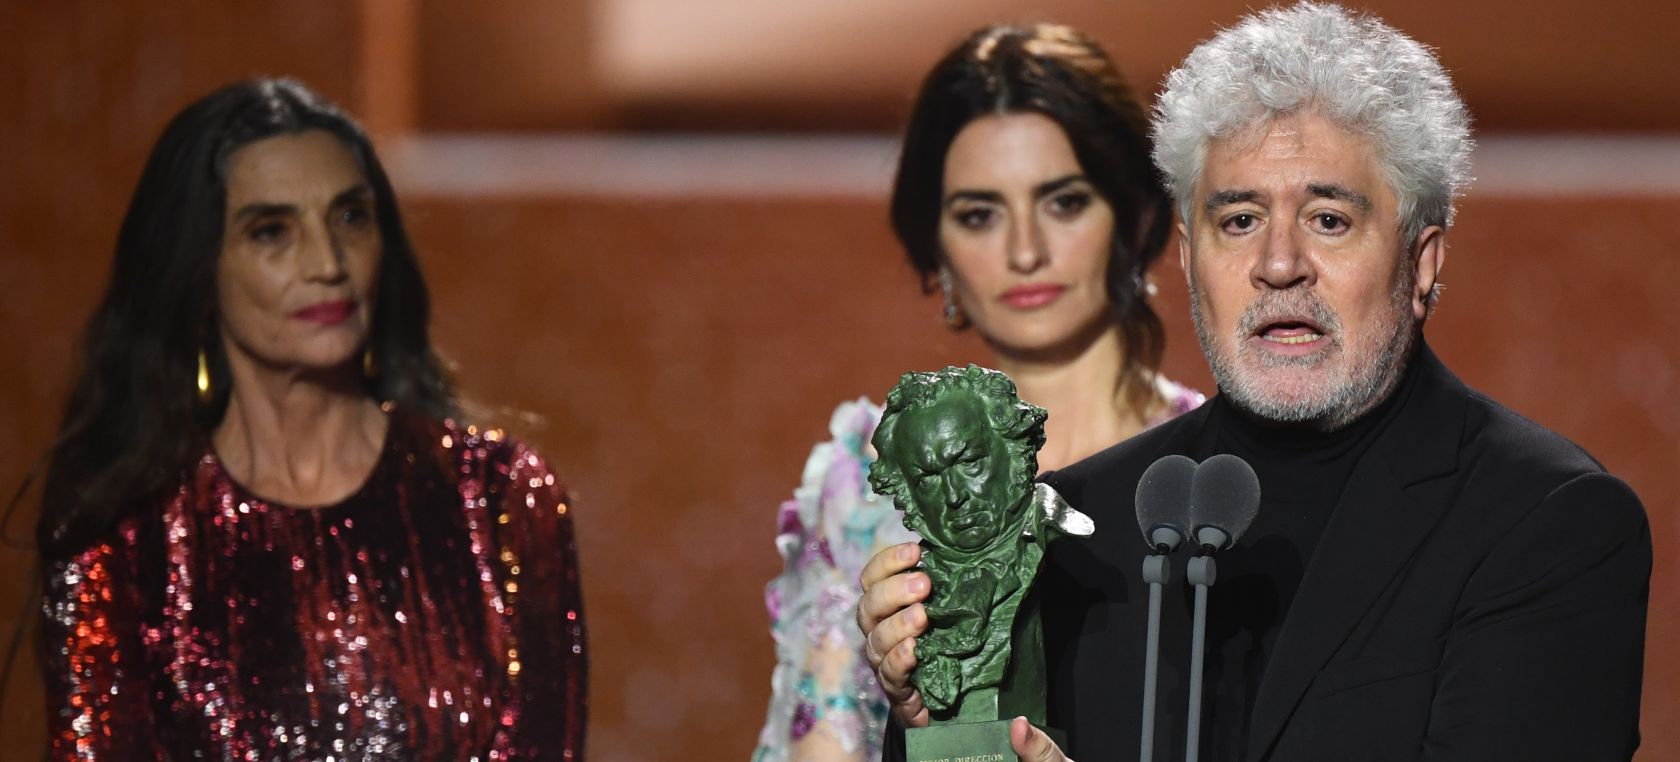 La Academia de Cine anunciará su lista de nominados a los premios Goya 2022: ¿Quiénes son los favoritos?